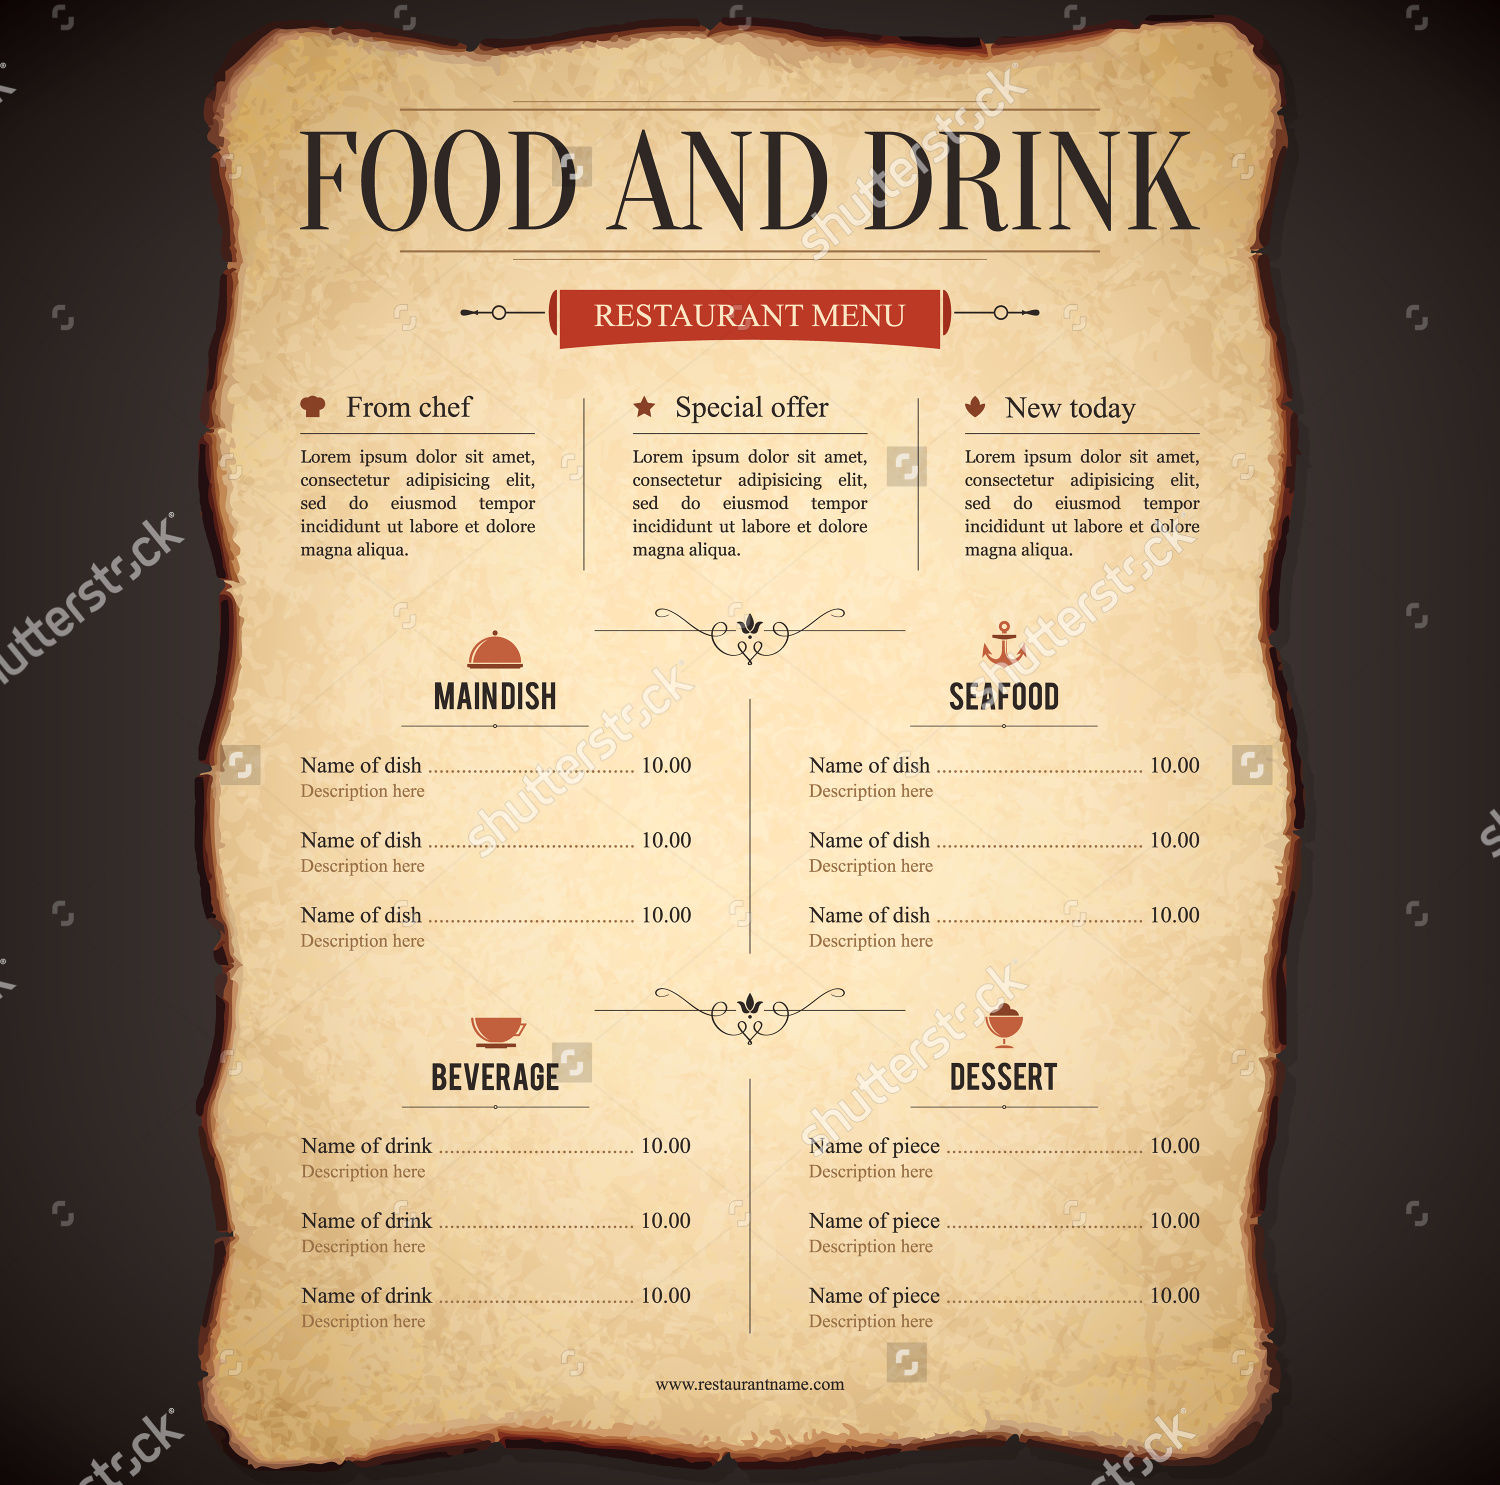 Food & Drink Menu